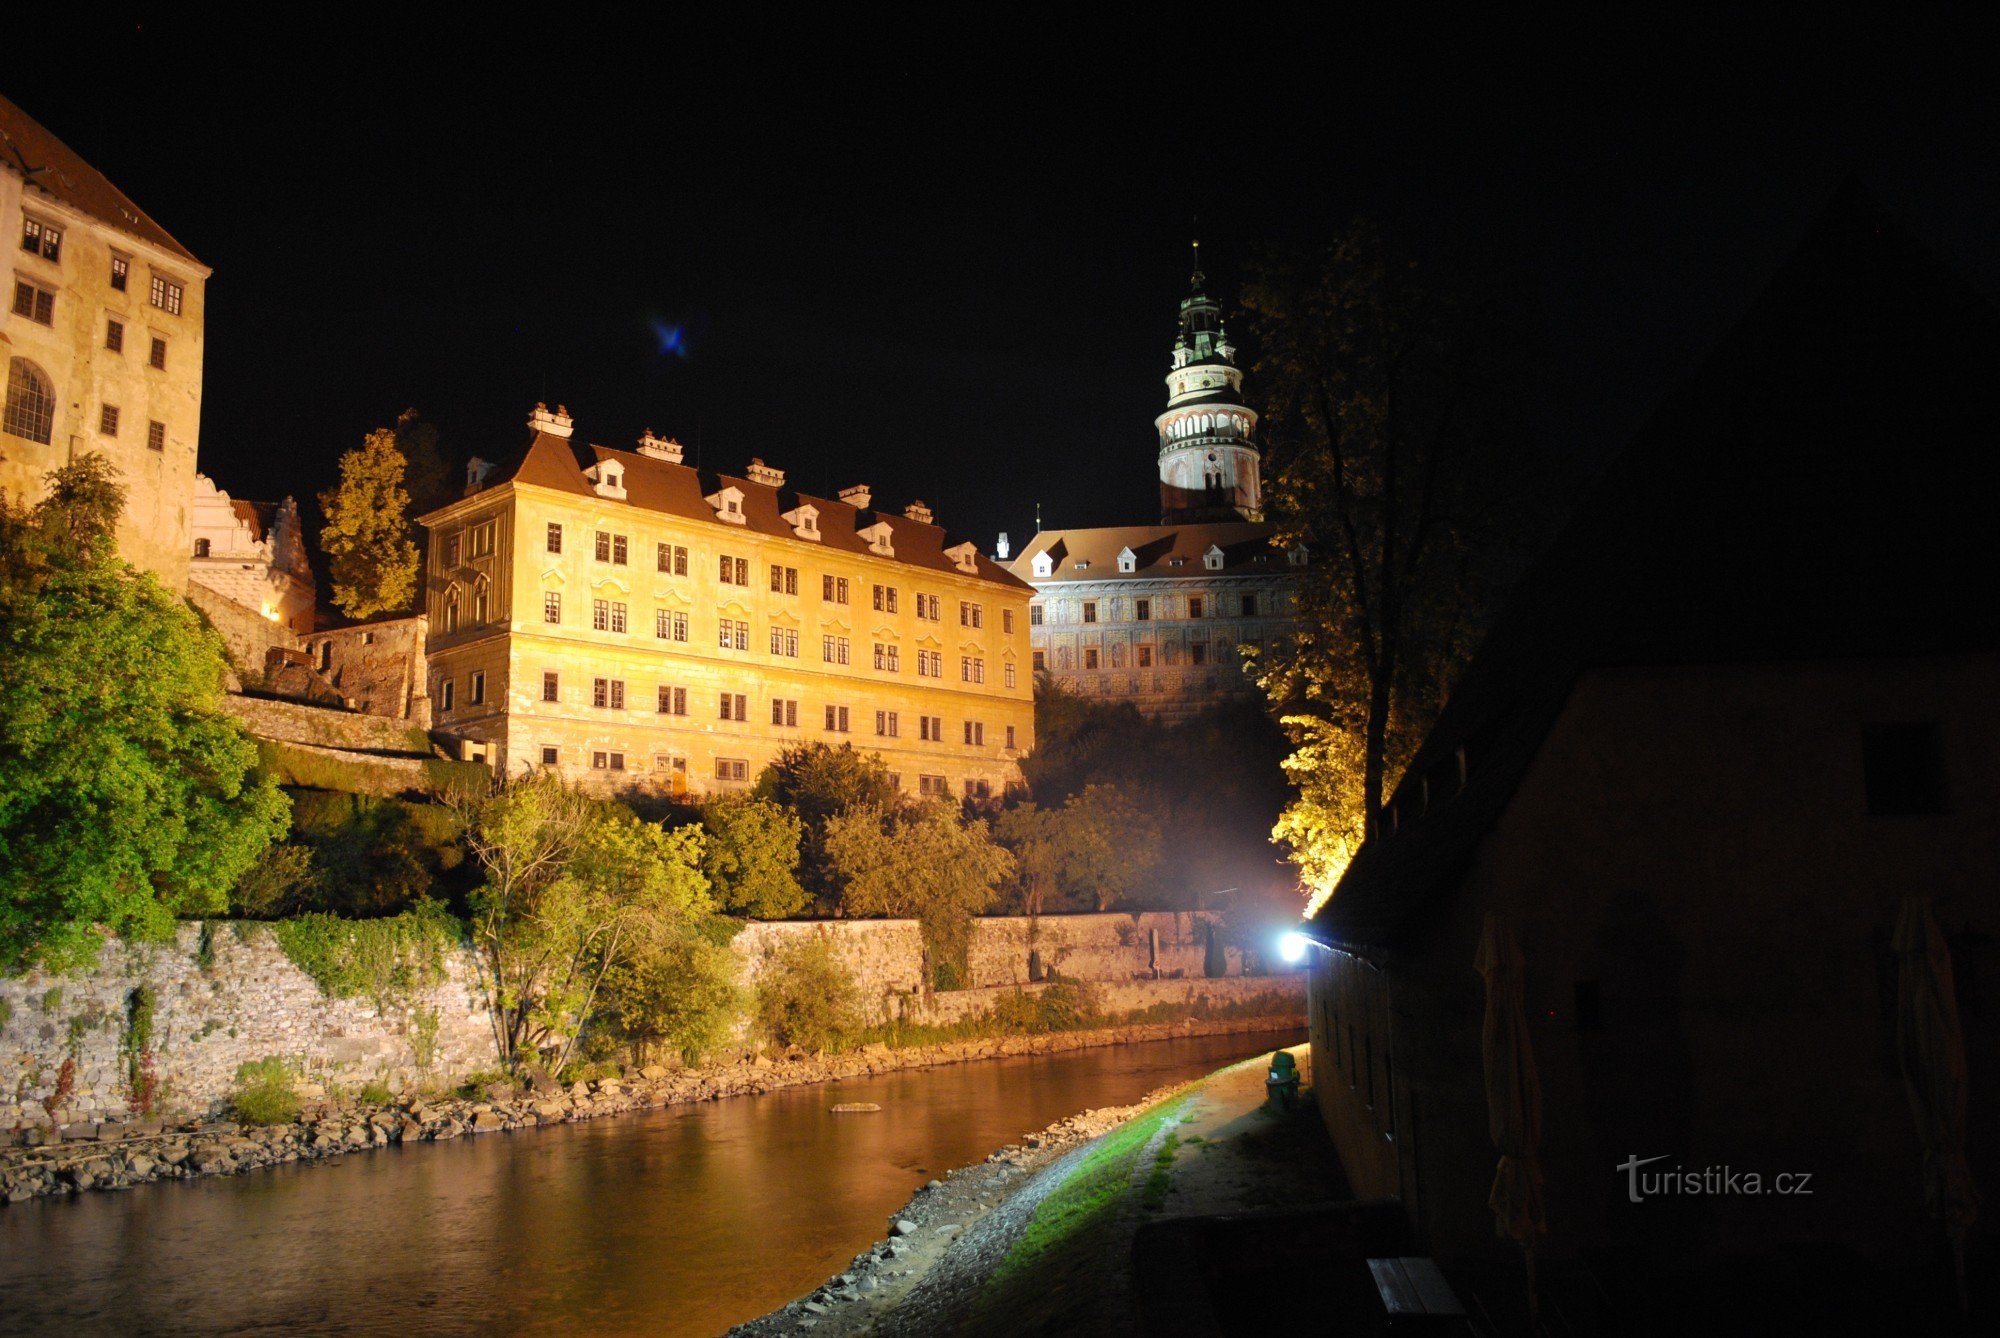 Český Krumlov binnen de muren is 's avonds mooi en romantisch - PRACHTIG